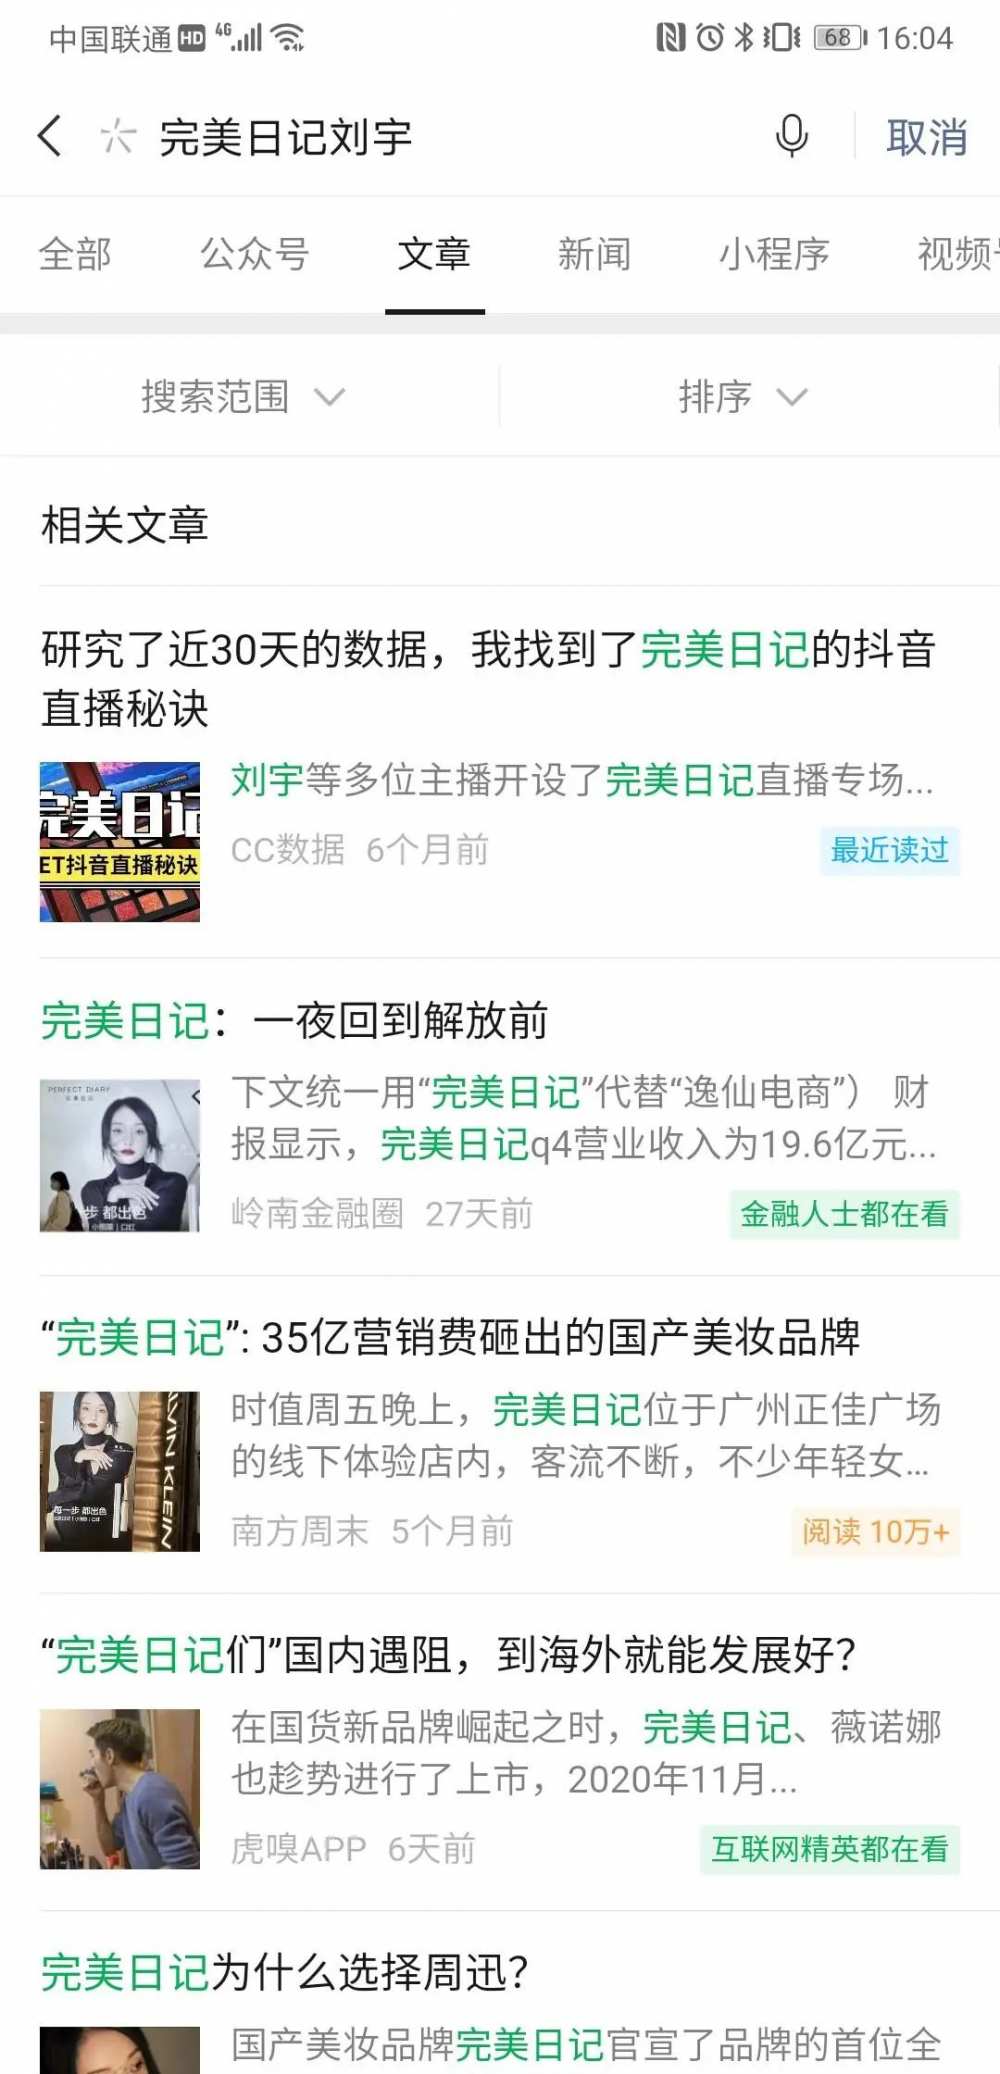 创造营选手刘宇成完美日记代言人，但似乎只有微博很热闹 | 15小时数据观察-第4张图片-周小辉博客